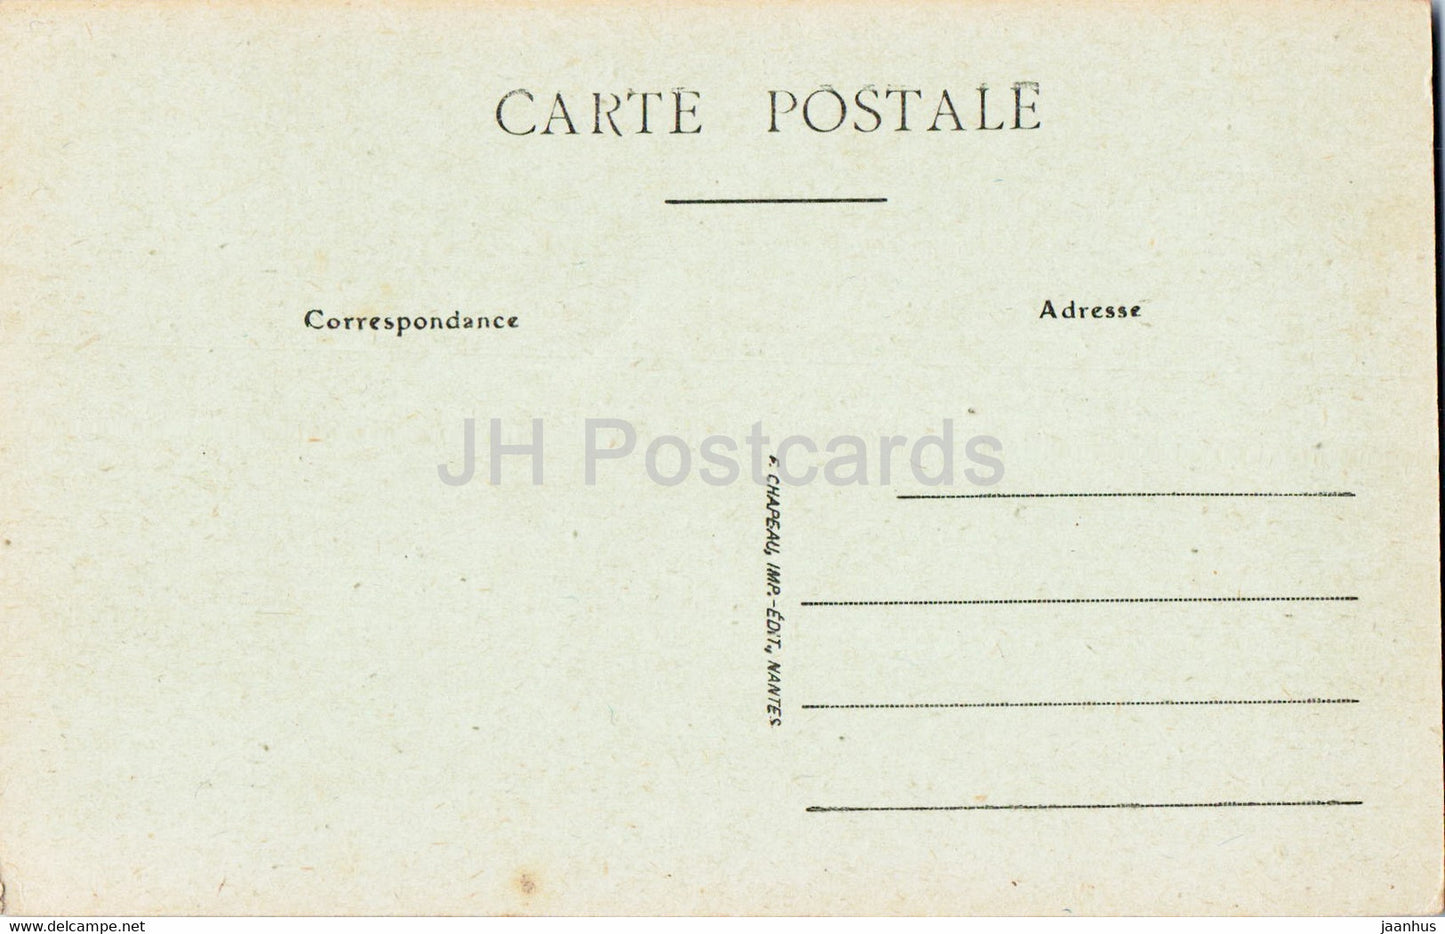 Nantes - Le Port près la Gare de la Bourse - navire - bateau - 511 - carte postale ancienne - France - inutilisée